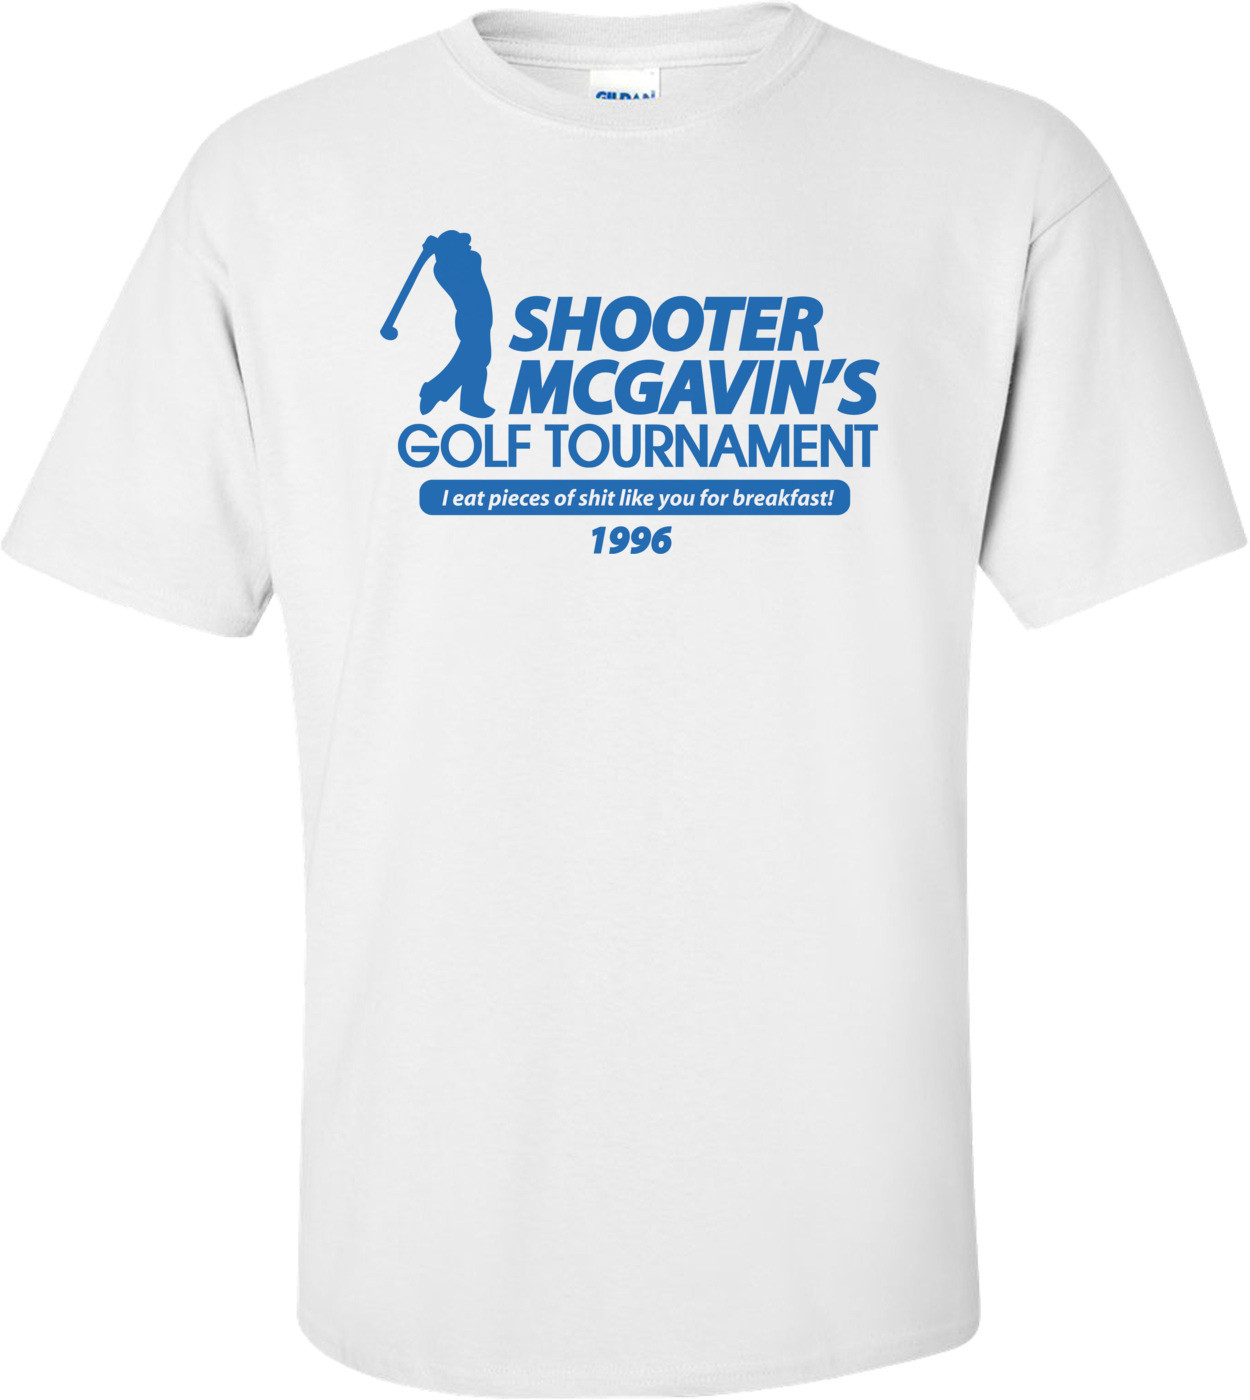 Shooter Mcgavin's Golf Tournament T-shirt 